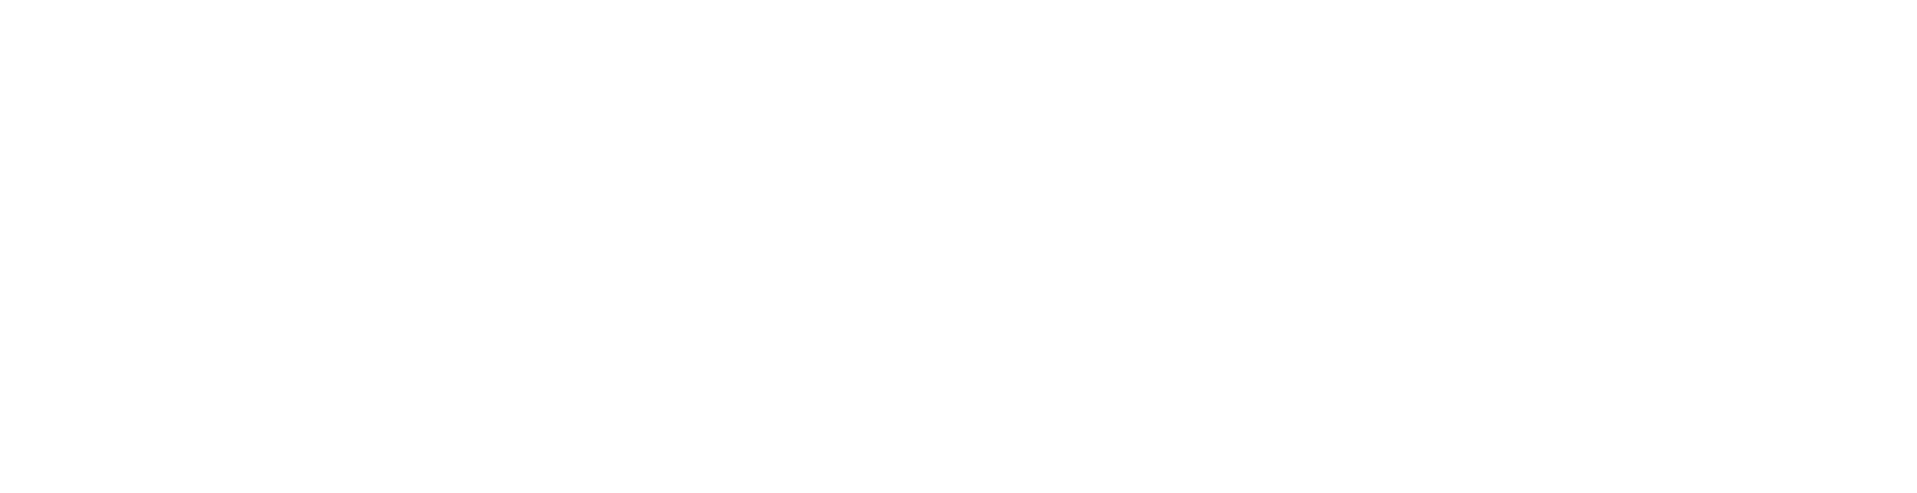 DCAS 2023 Logo